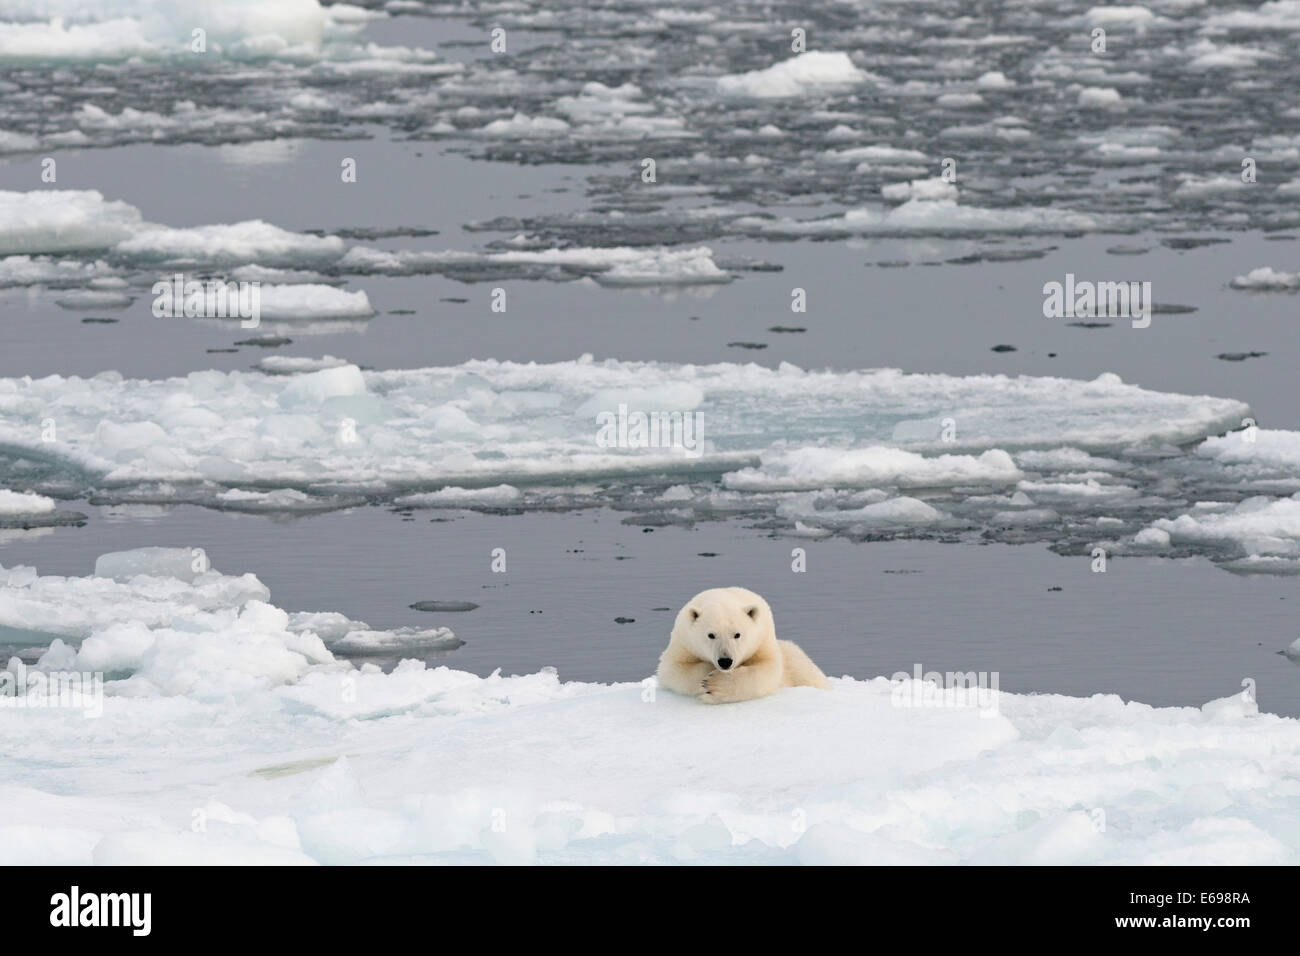 El oso polar (Ursus maritimus) tumbado sobre el mar de hielo, Spitsbergen, archipiélago de Svalbard y Jan Mayen, Svalbard, Noruega Foto de stock